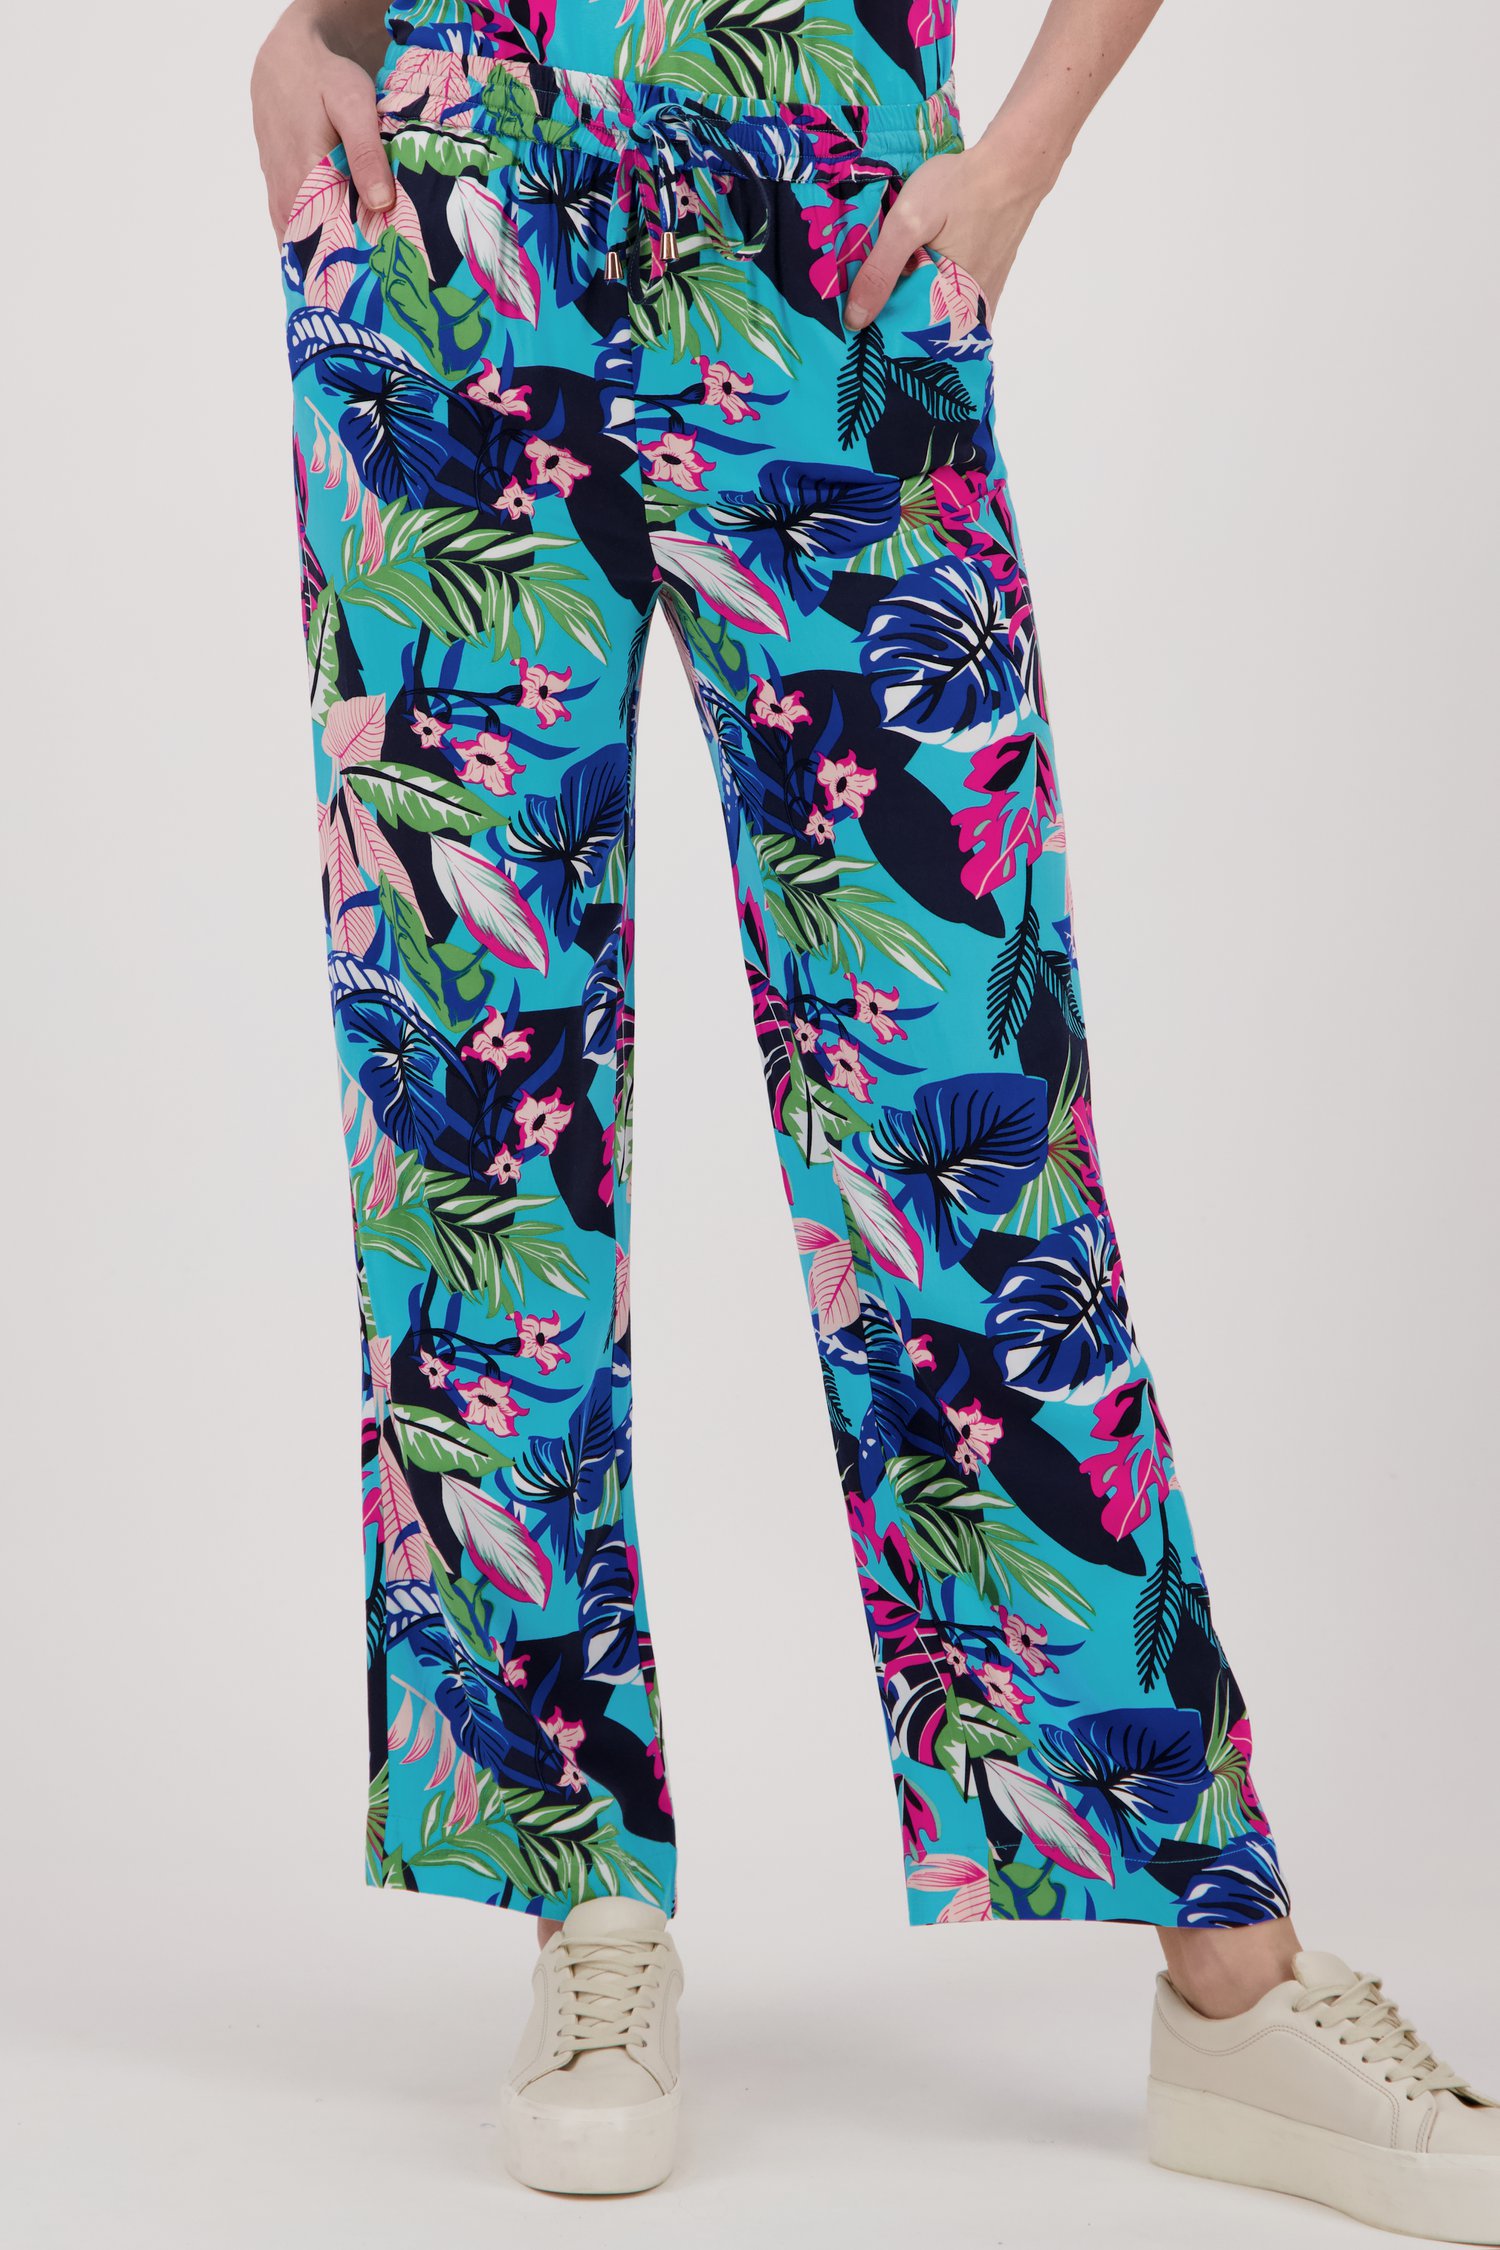 Wijde, turquoise broek met tropische print van Claude Arielle voor Dames